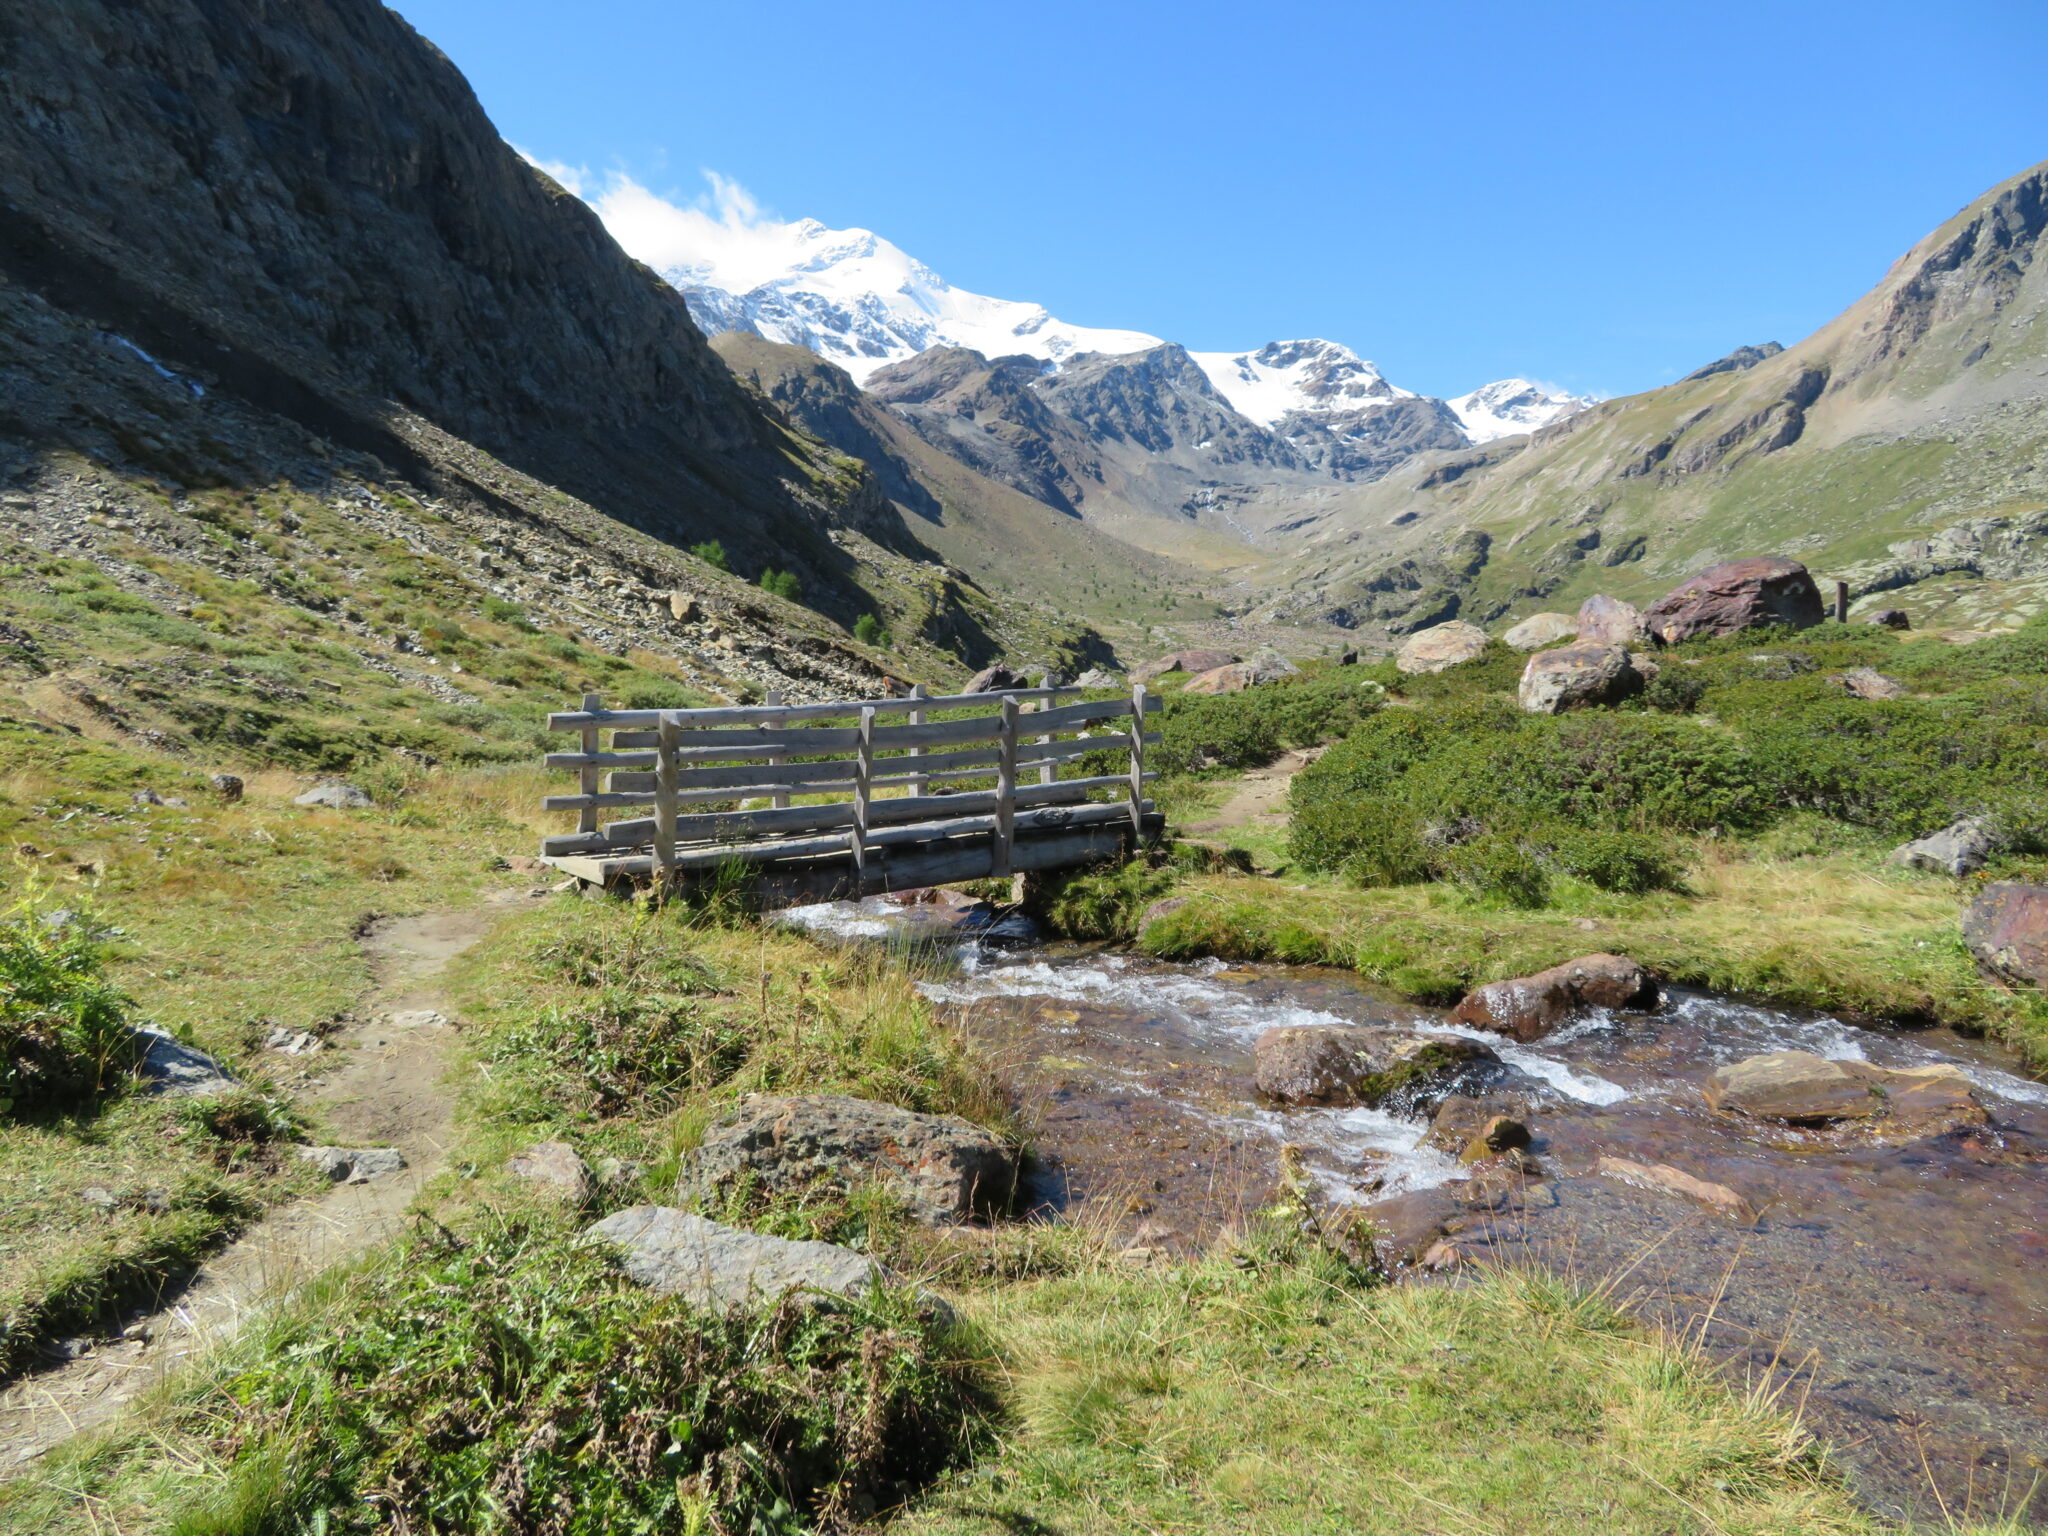 Wandelparadijs Zuid Tirol: wat zijn mooie wandelroutes in Meraner Land?